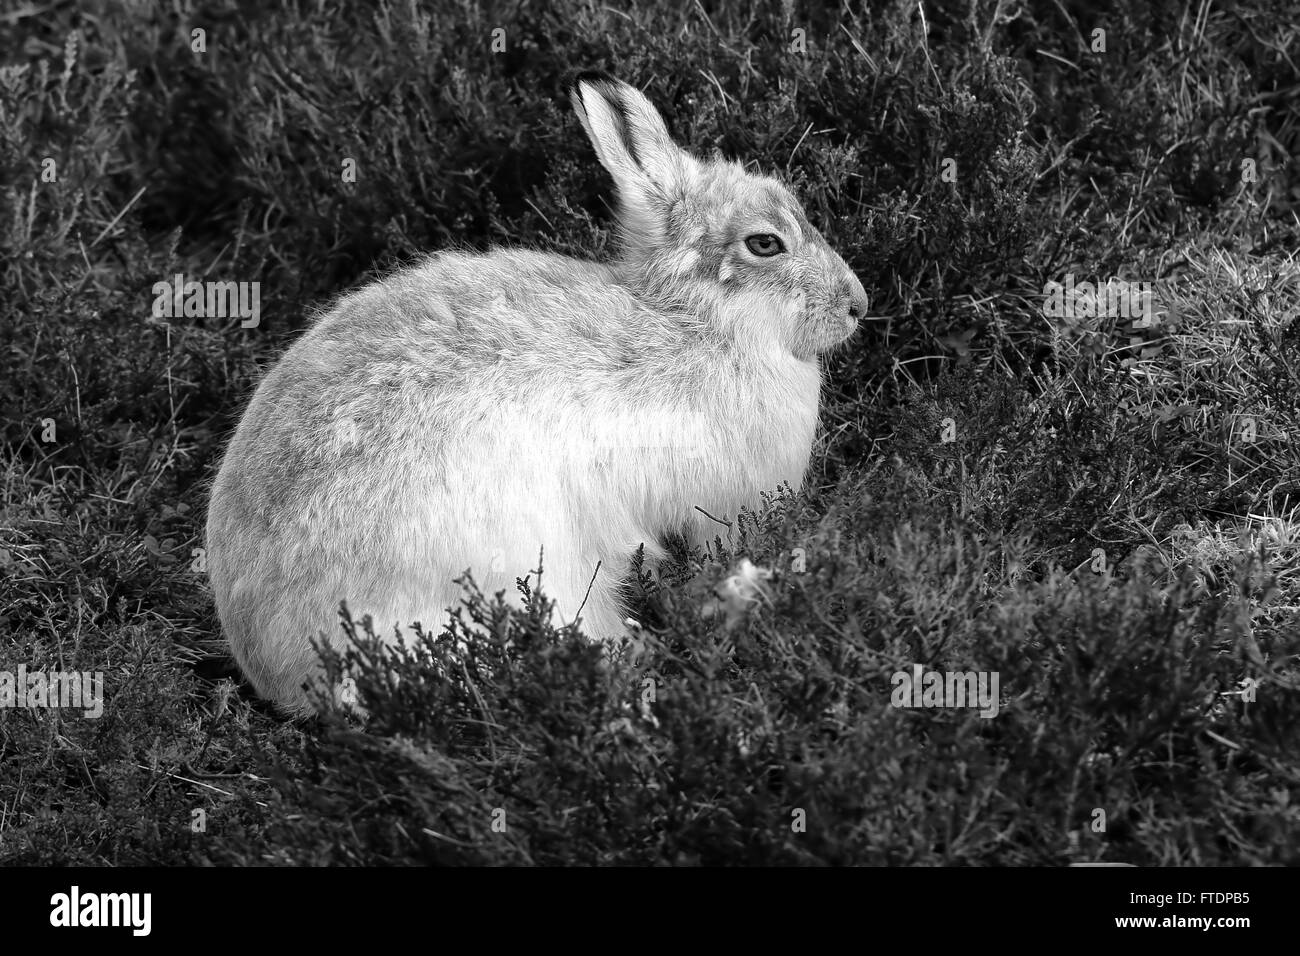 Der Schneehase Hase (Lepus Timidus), auch bekannt als blaue.  Hier zu sehen auf einem schottischen Berg im Heidekraut. Stockfoto